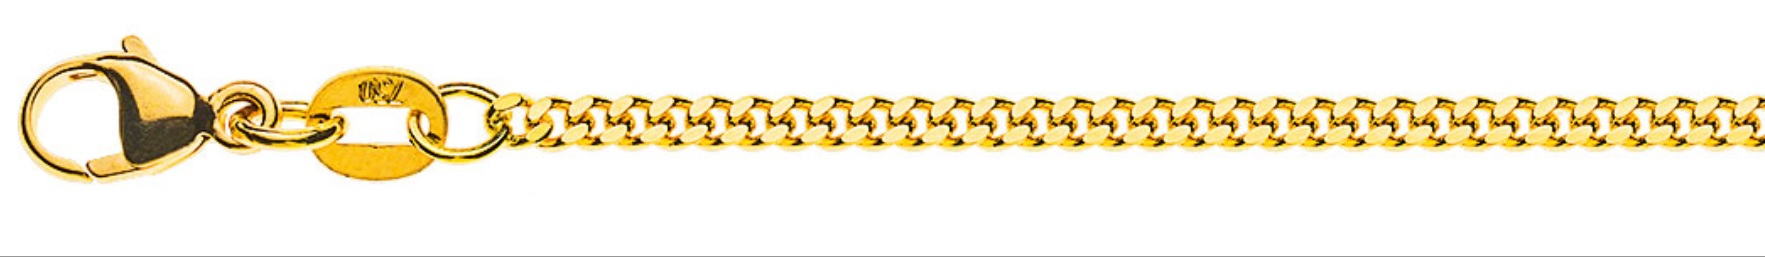 AURONOS Prestige Collier en or jaune 18 carats panzer poncé 55cm 2.0mm